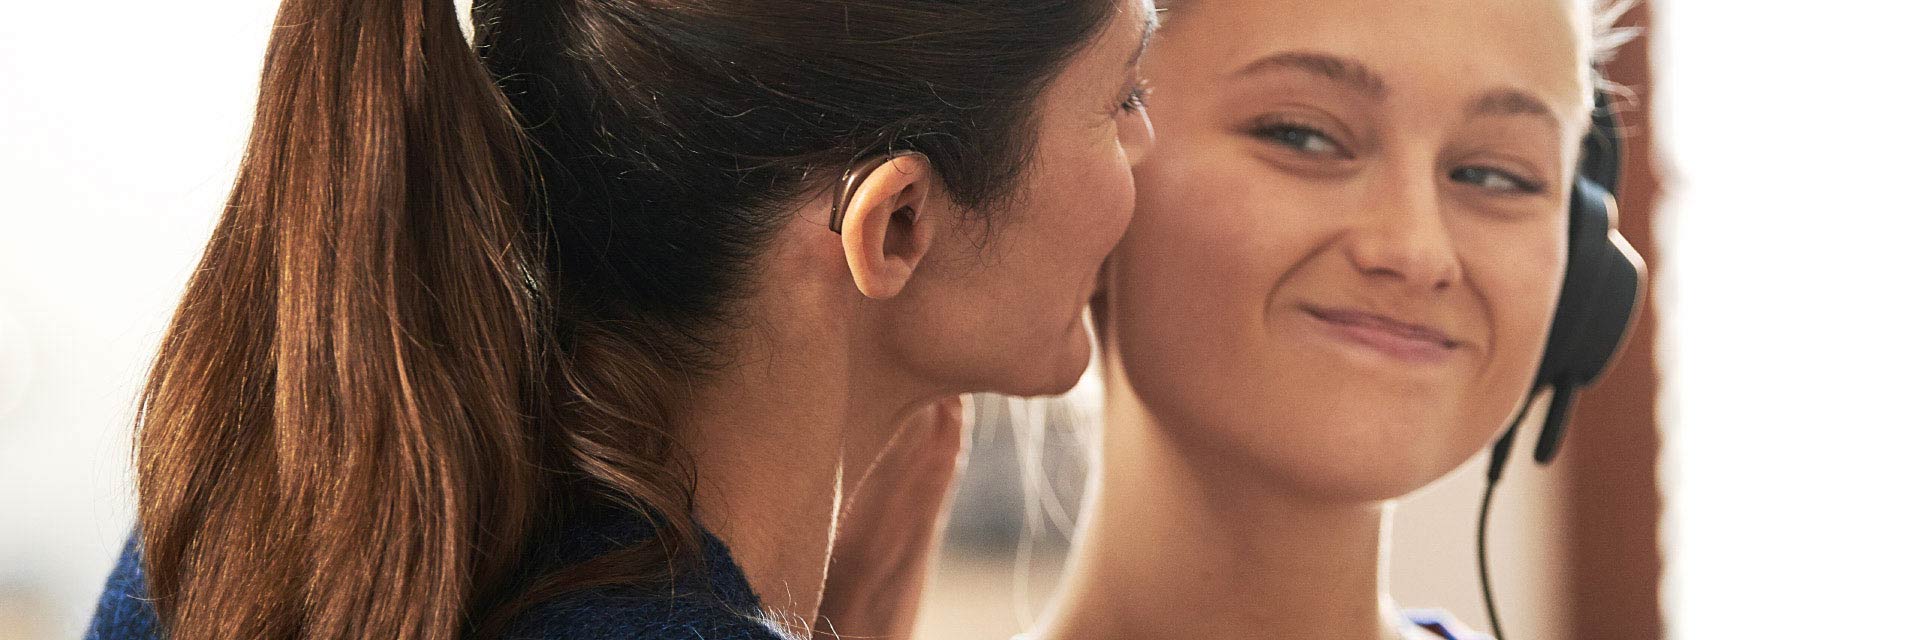 Imagem mostra mulher com aparelho auditivo no seu ouvido e uma jovem, ambas a sorrir 